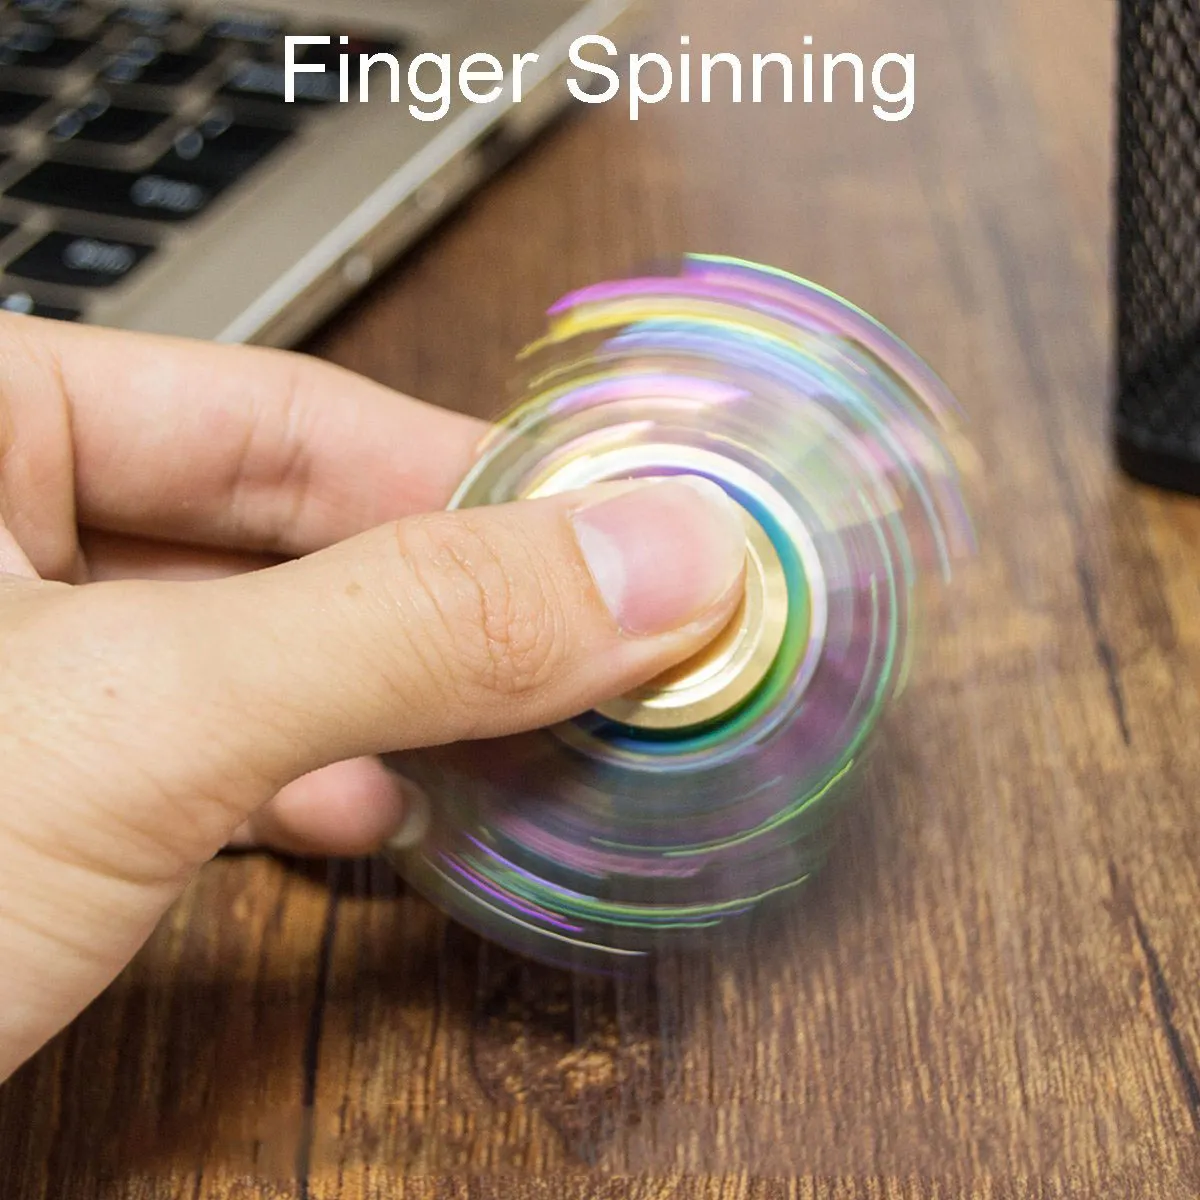 El Spinner Spin 2Mins EDC Fidget Spinner El Parmak ucu Gyro Magic Anti-Anksiyete Oyuncakları Metal Gökkuşağı Kaplama Ateş Lastikleri Kelebek Balık Yuvarlak